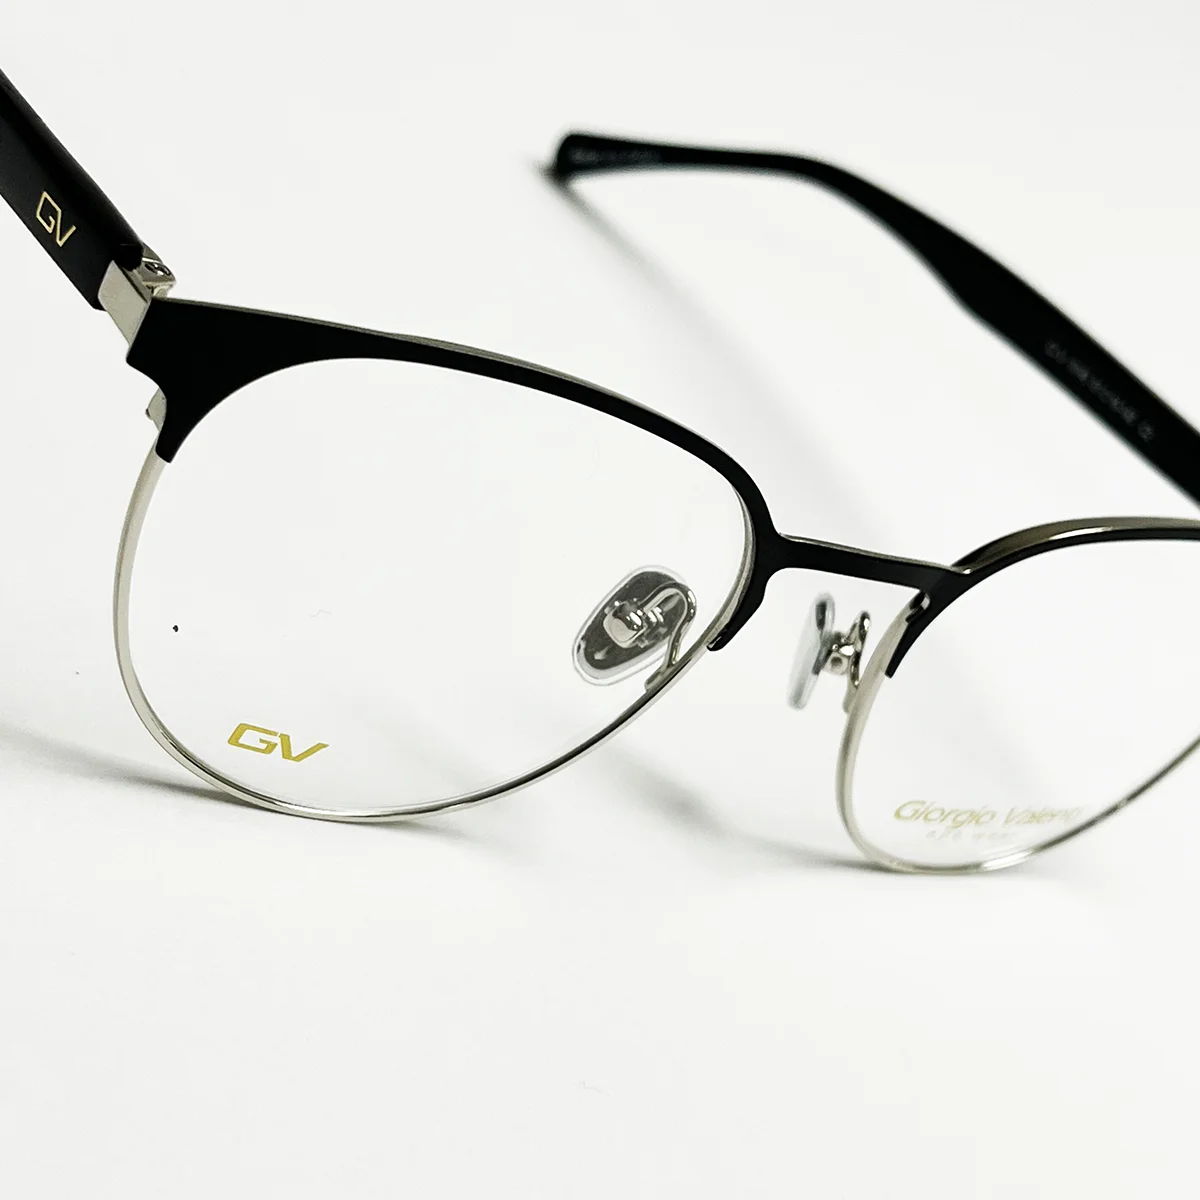 عینک طبی Giorgio Valenti مدل GV_5145 c2